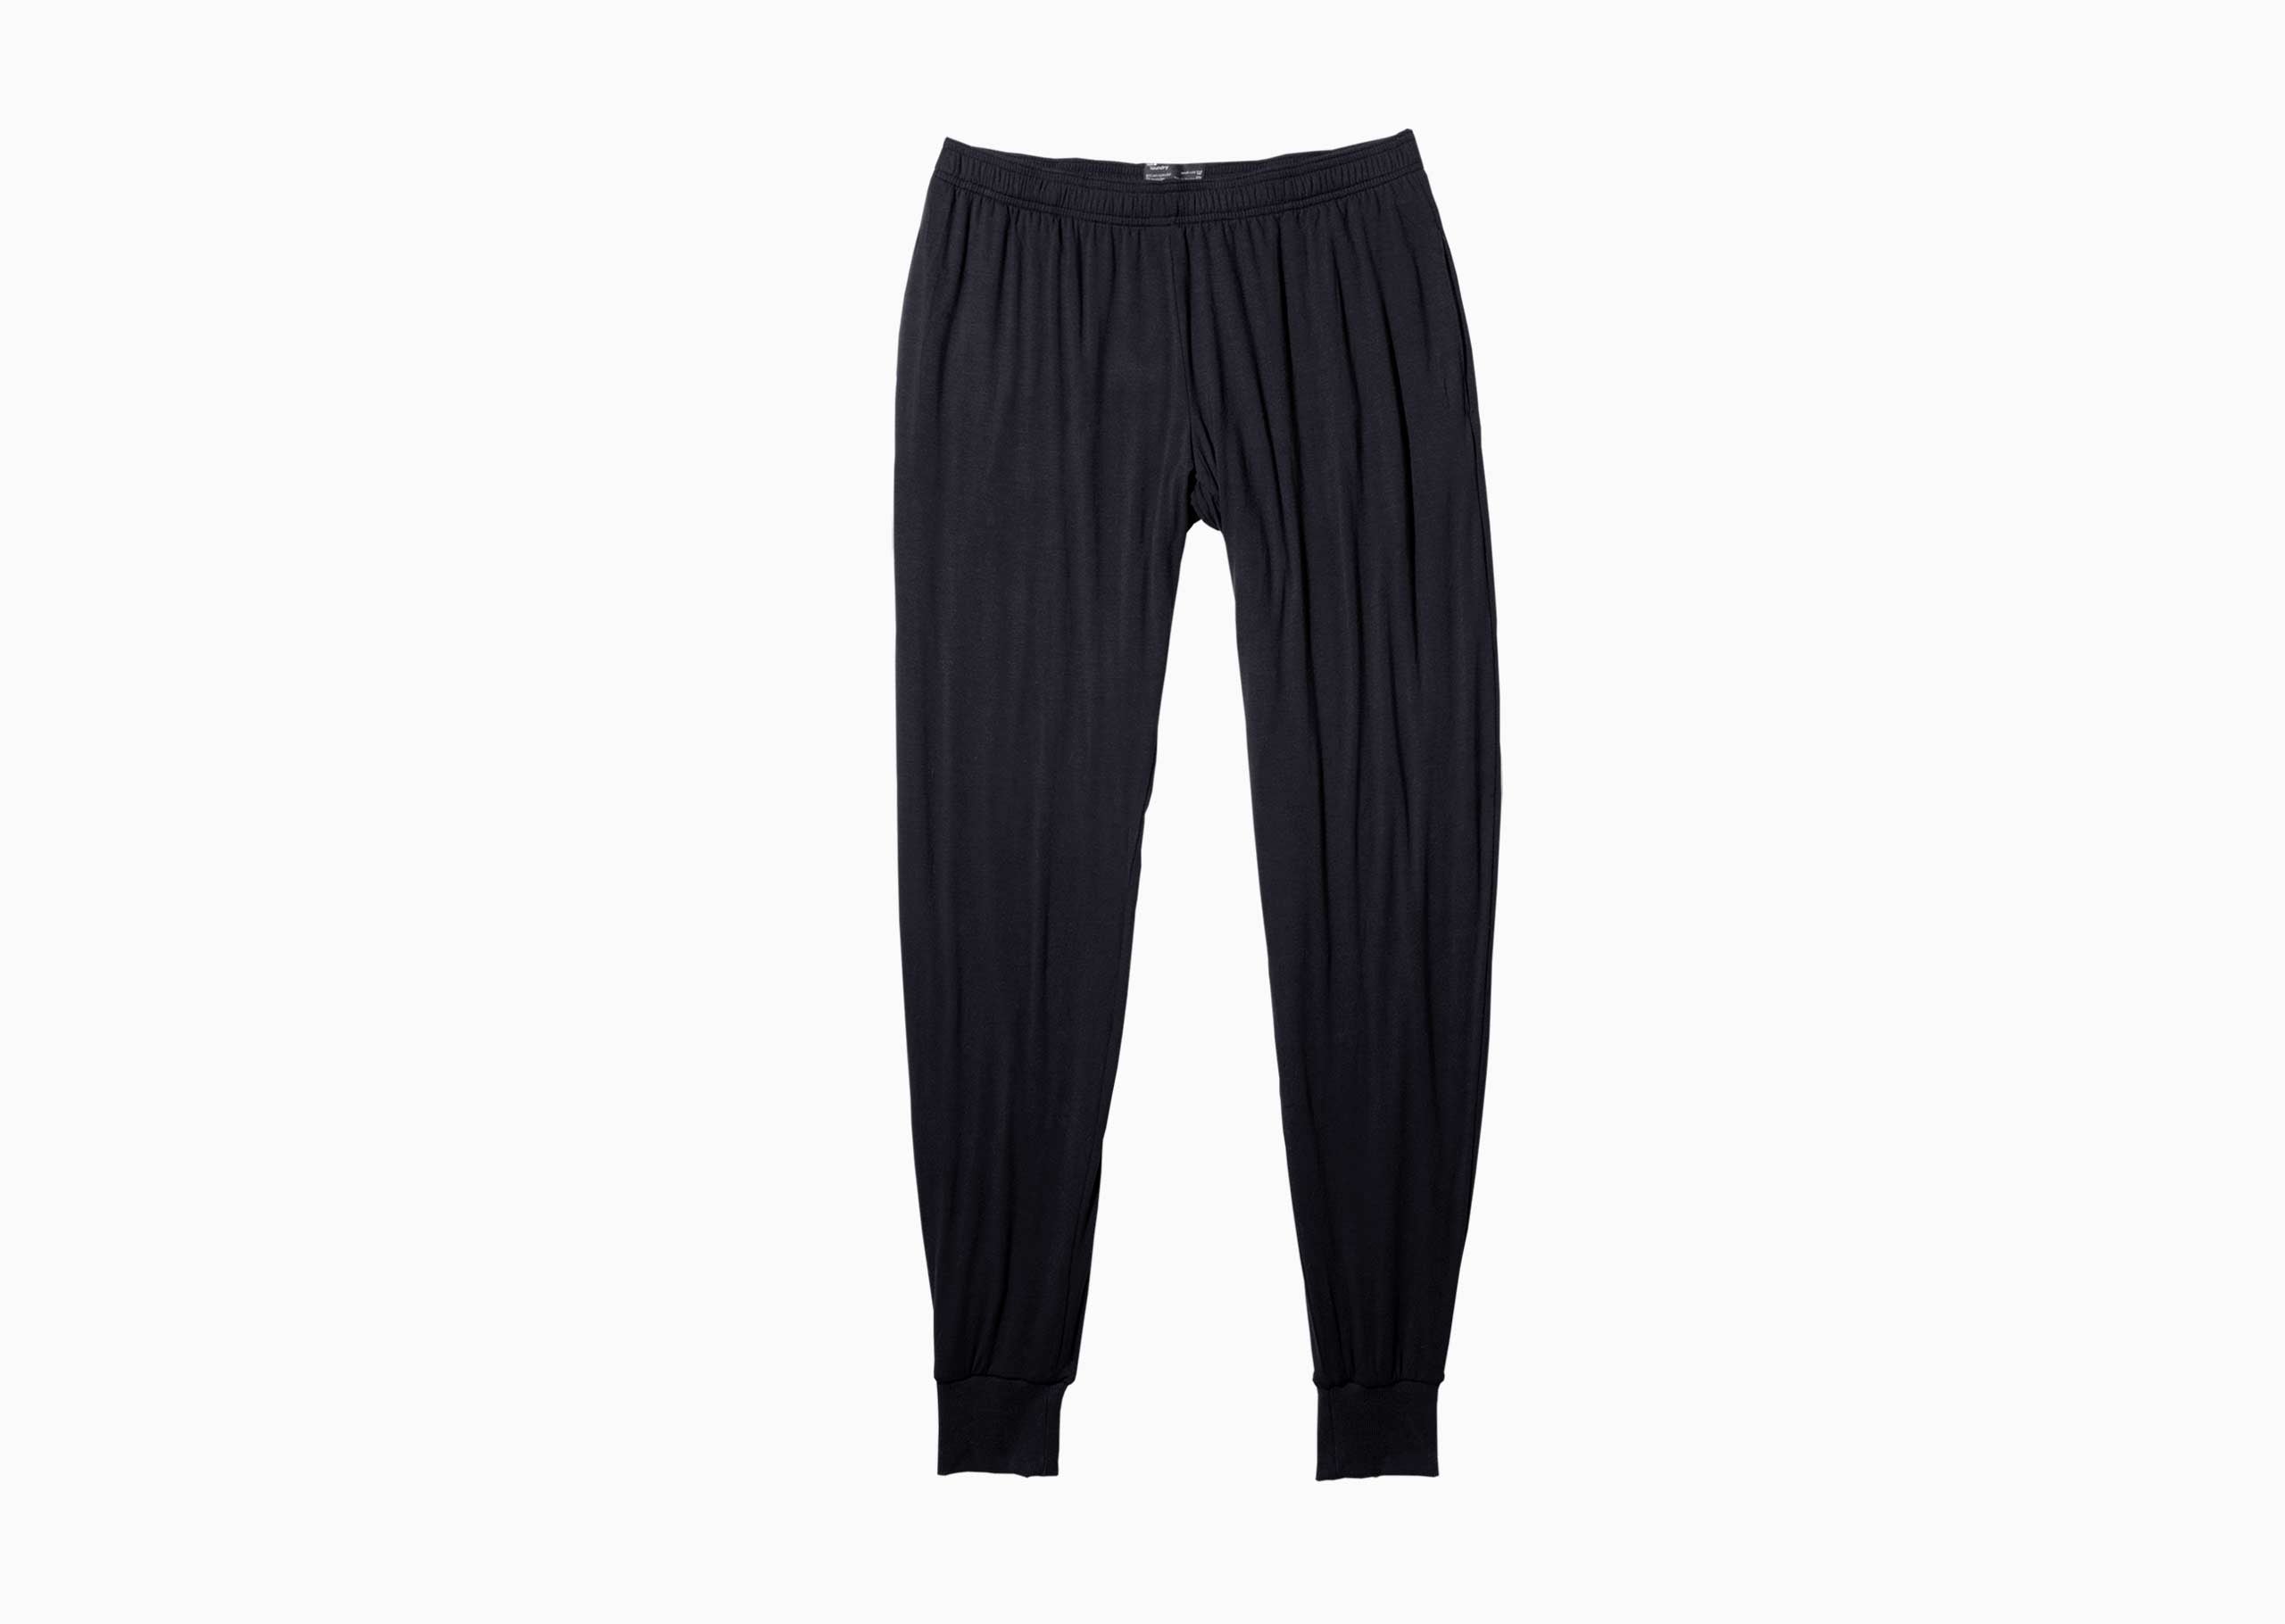 Men's casual pants - black / 33 | Mens pants casual, Slim fit formal pants,  Mens dress pants